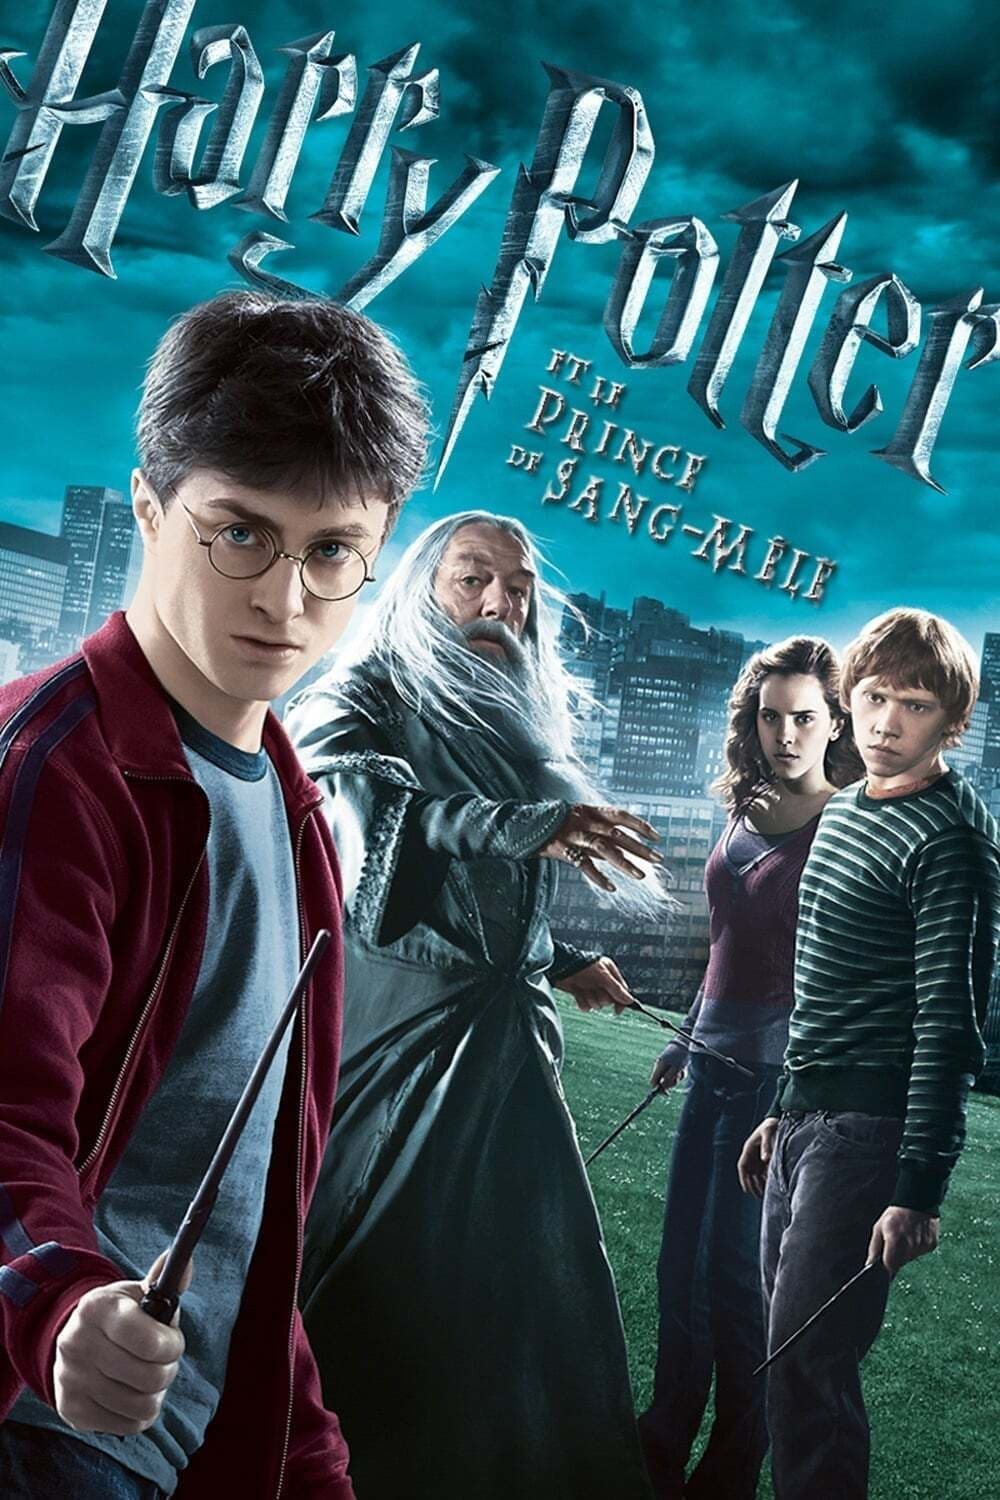 Affiche du film Harry Potter et le Prince de sang-mêlé